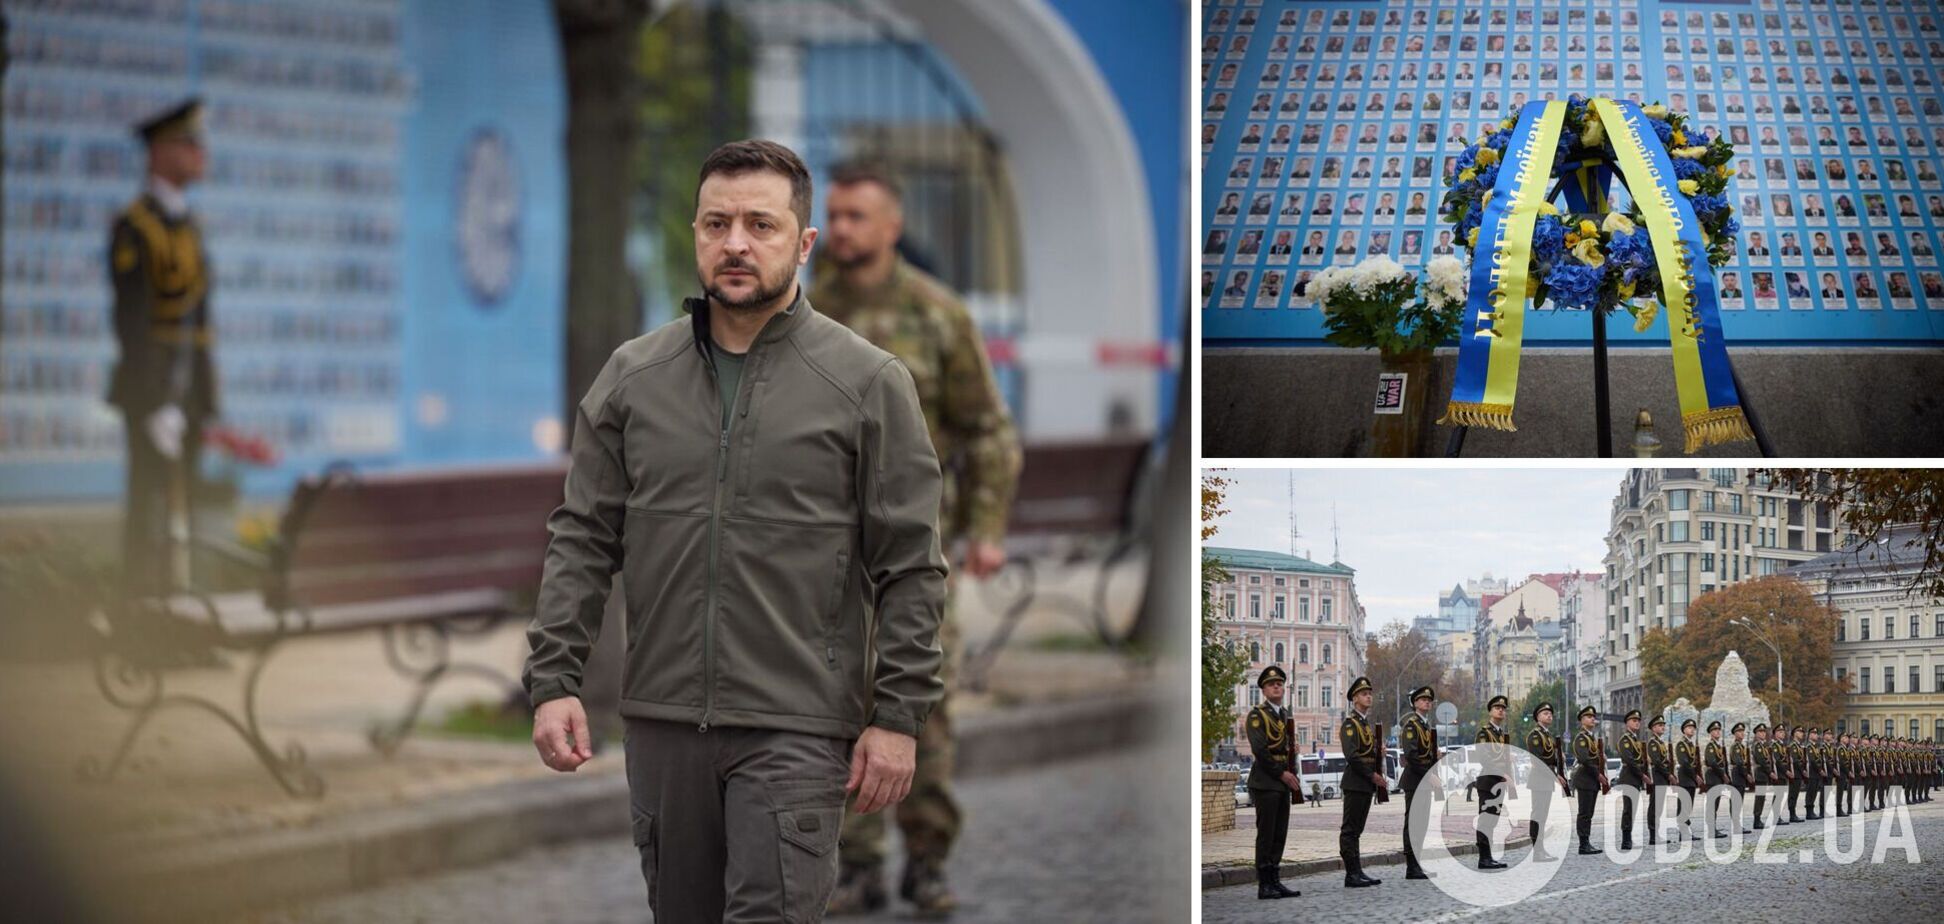 'Их подвиги навсегда в истории': Зеленский почтил память защитников, которые отдали жизнь за Украину. Видео